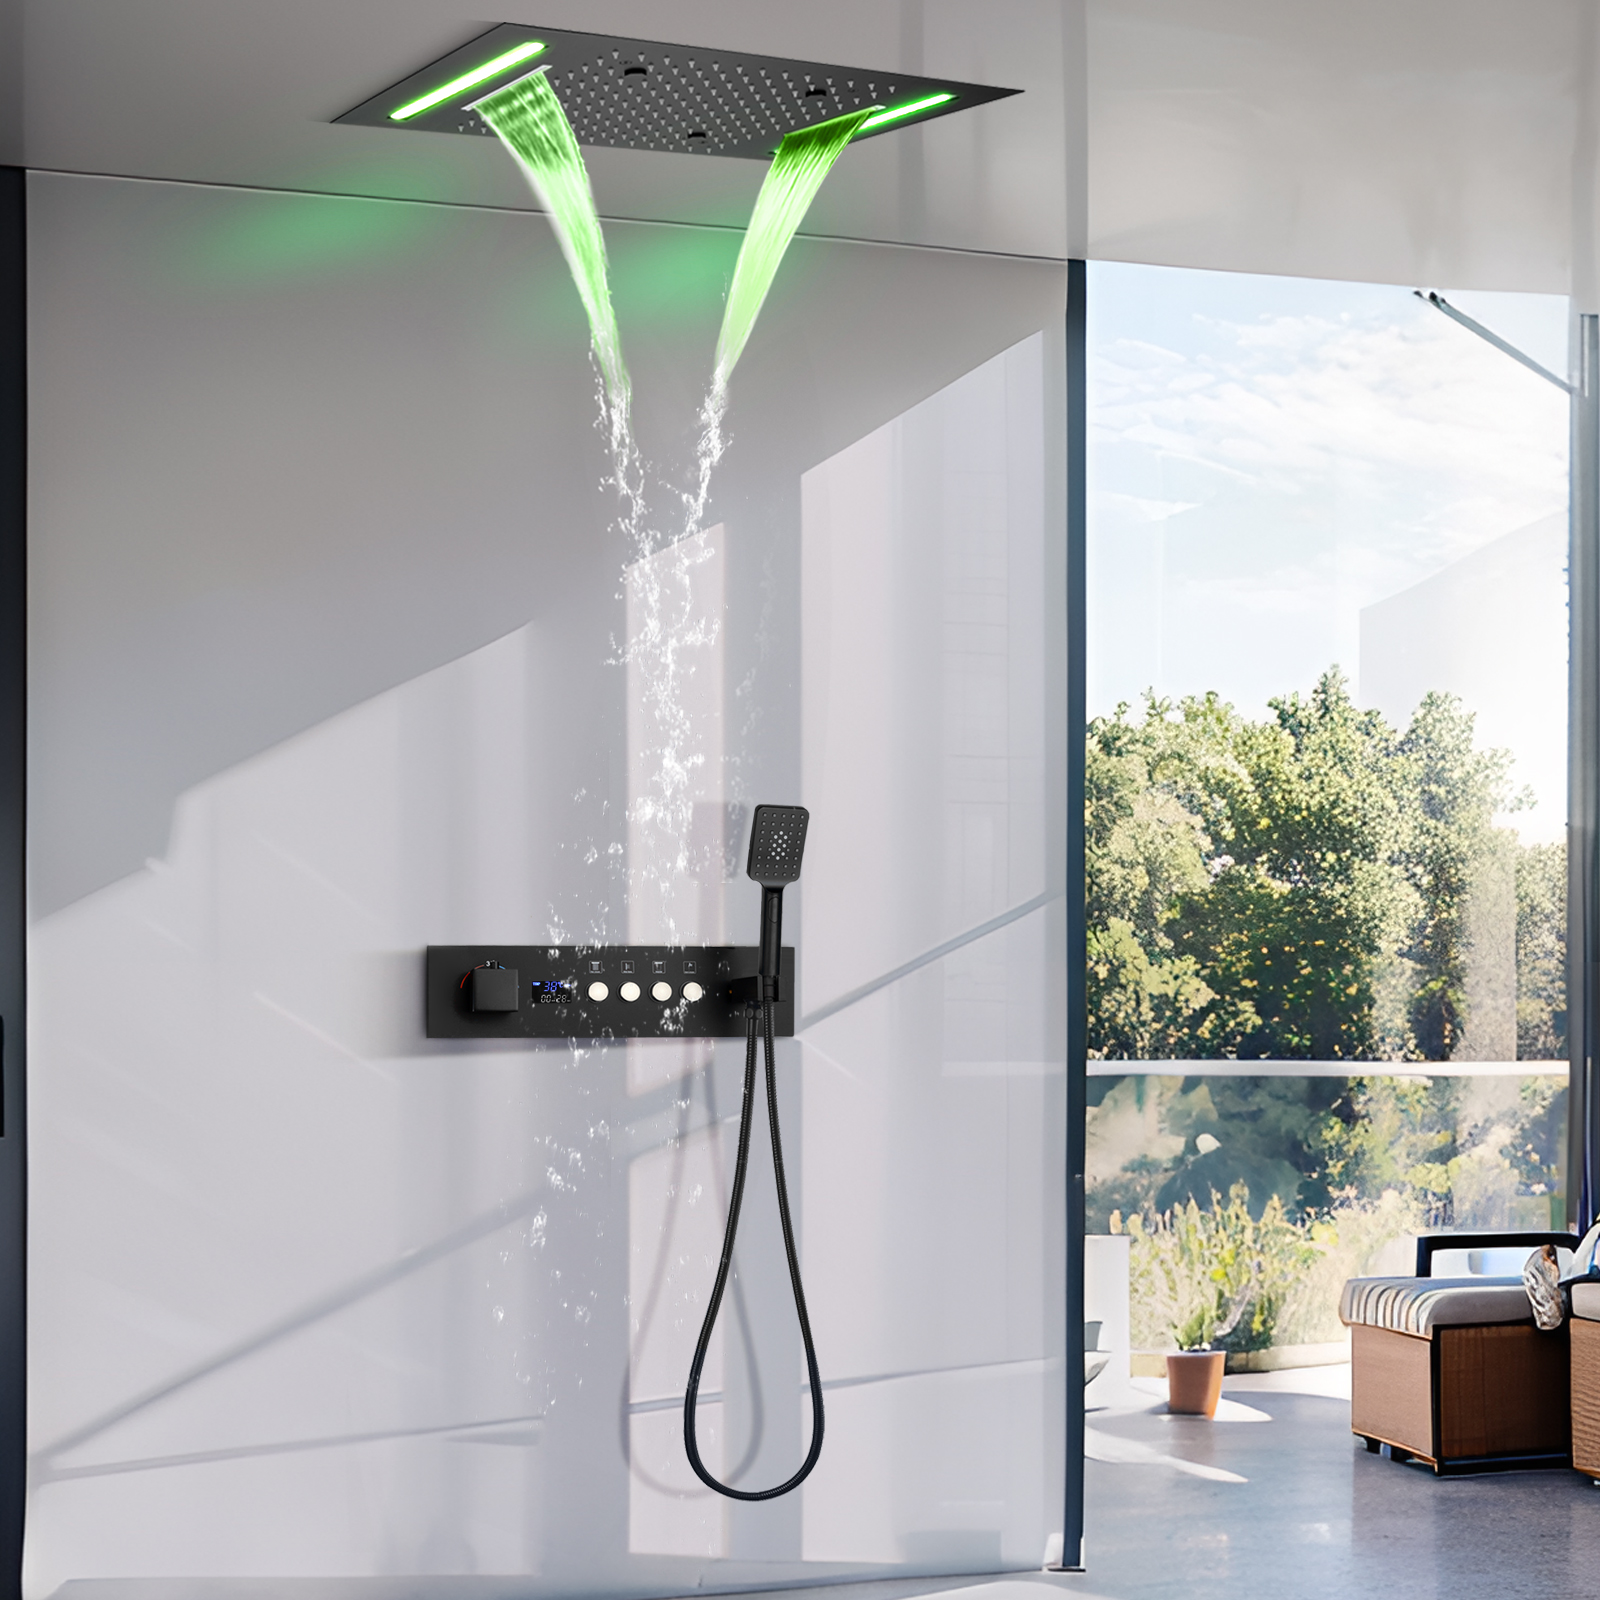 Tela de exibição led preta fosca, conjunto digital de torneira de chuveiro de temperatura constante, sistema de massagem de chuveiro de água de chuva de 4 funções